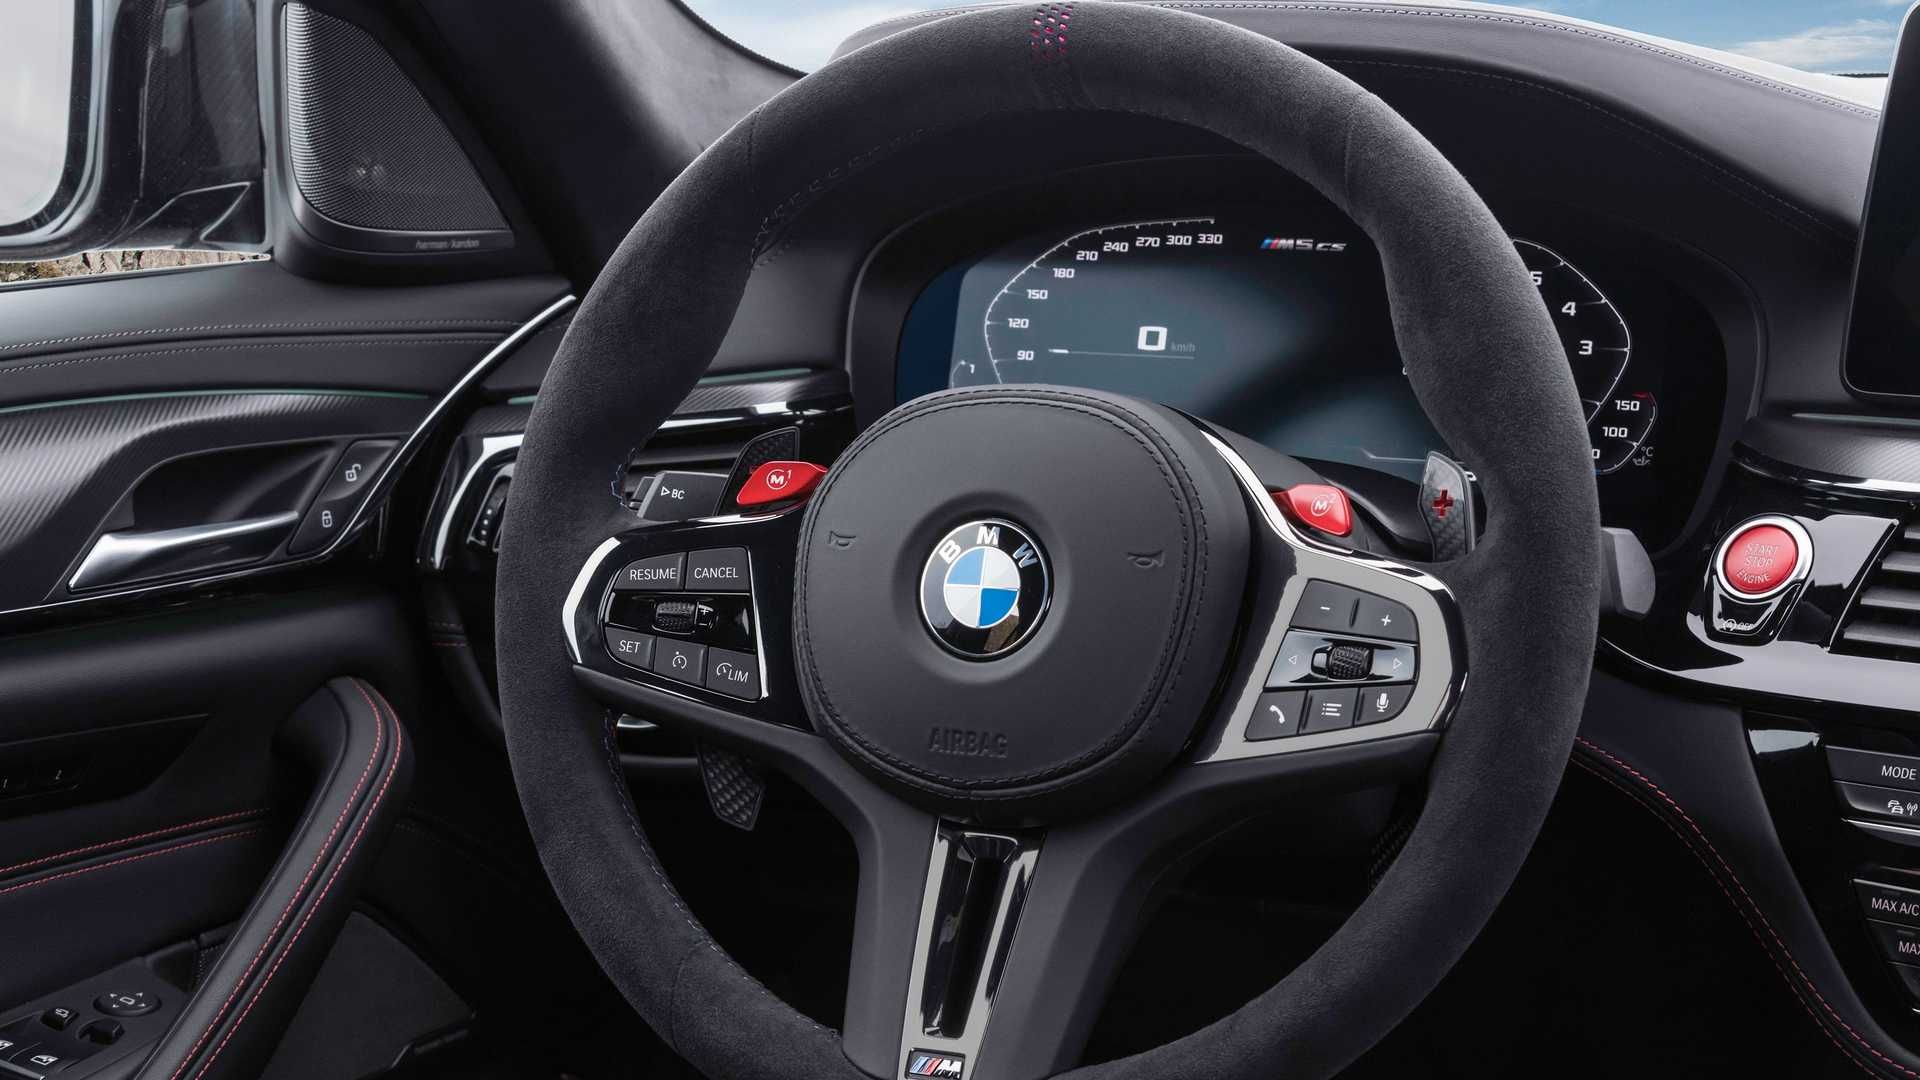 مرجع متخصصين ايران BMW M5 CS بي ام و ام 5 سي اس 2022 نماي فرمان